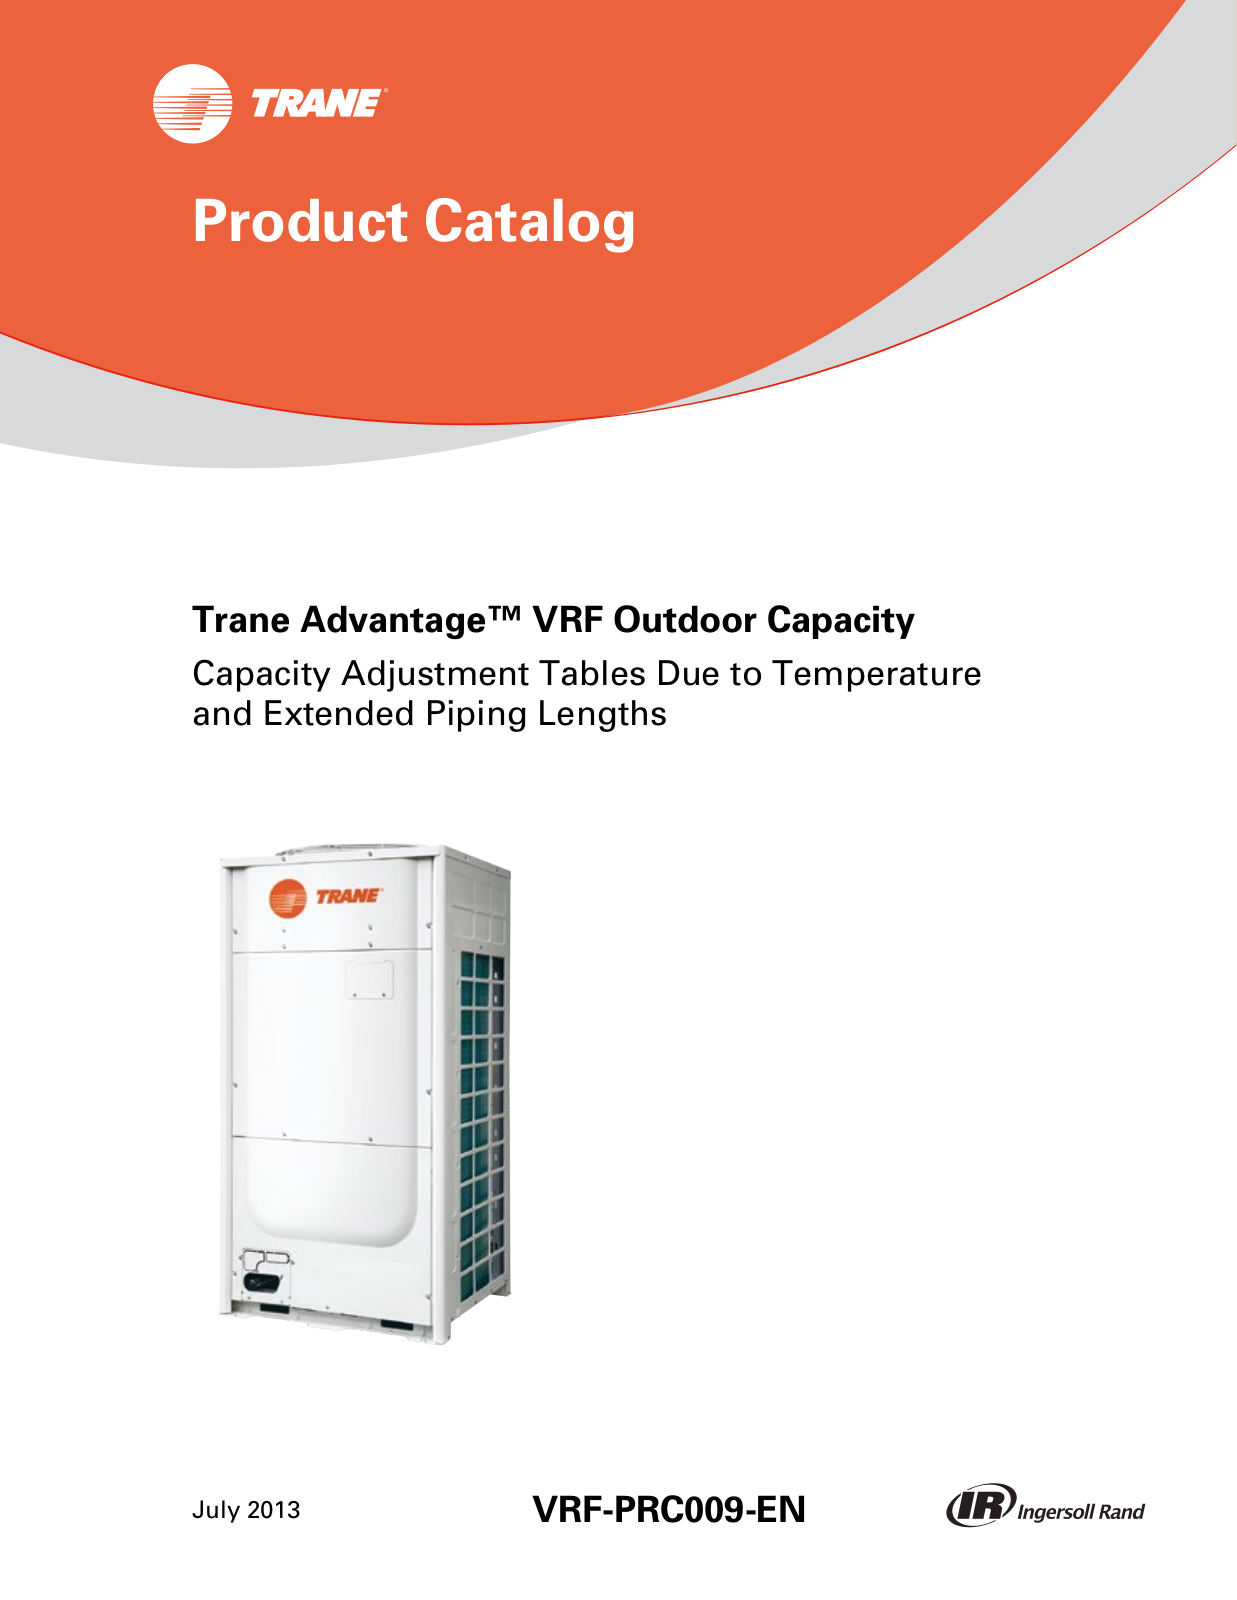 Trane Advantage VRF Outdoor Capacity Catalogue